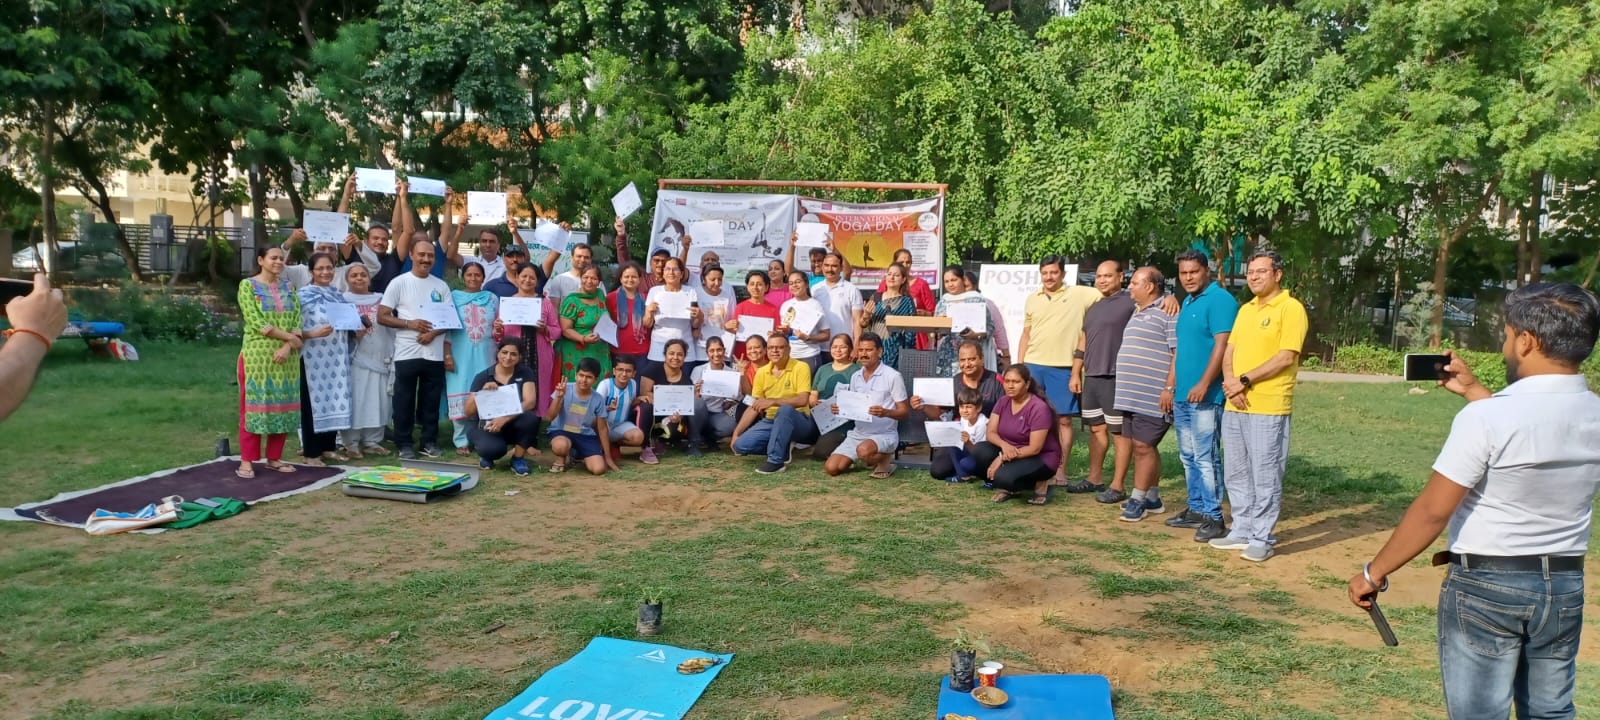 अंतर्राष्ट्रीय योग दिवस पर नगर निगम गुरूग्राम द्वारा आयोजित किए गए कार्यक्रम